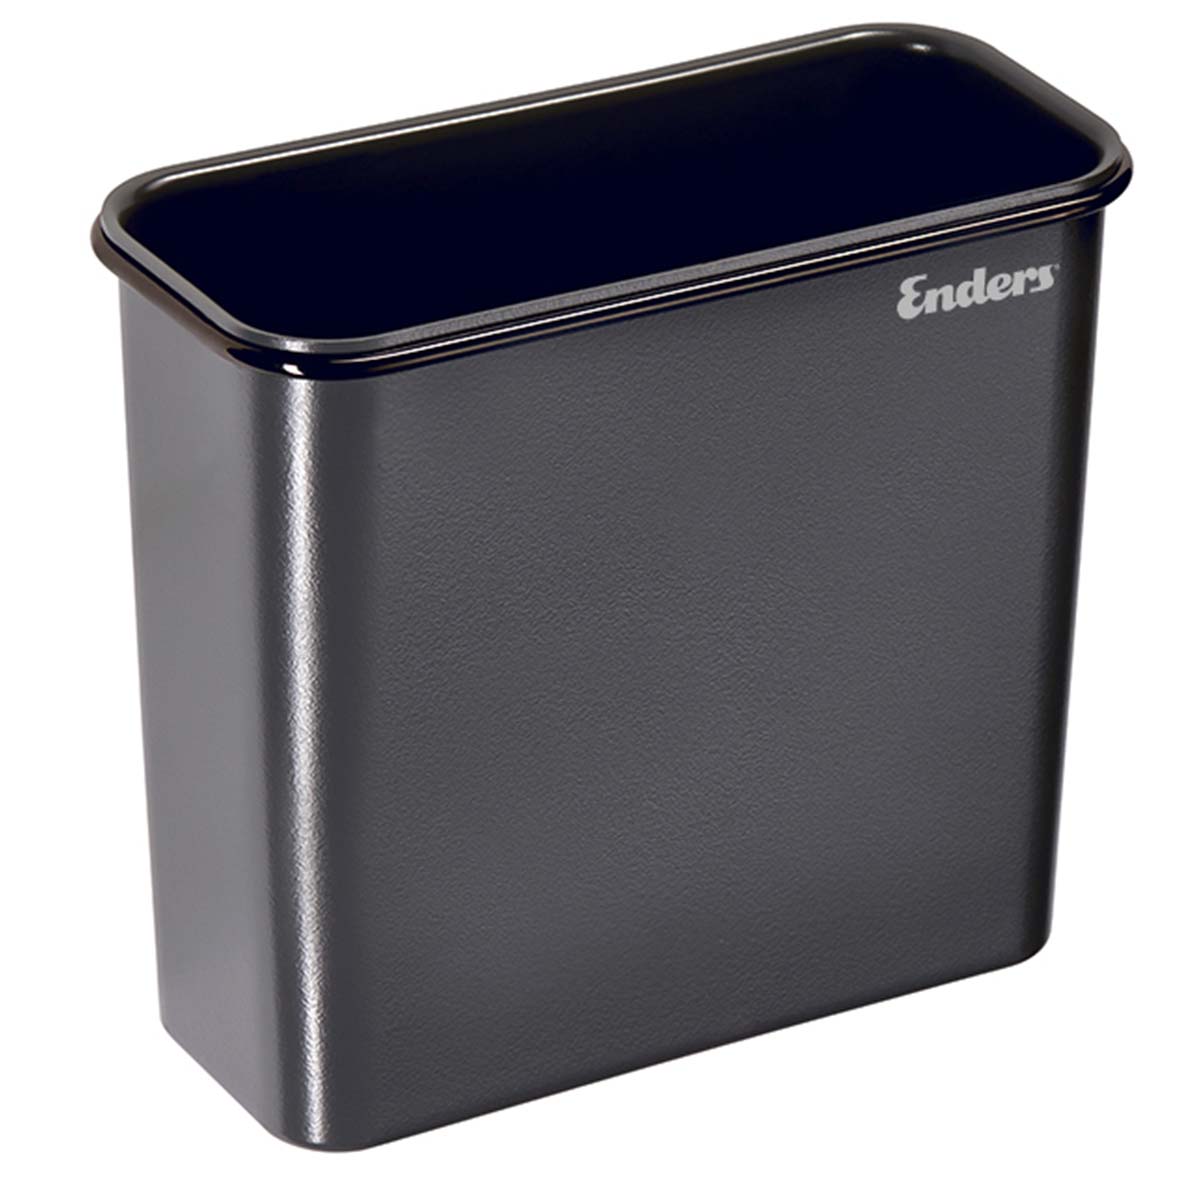 Enders® GRILL MAGS Abfall-Behälter XL 7815, Grill-Zubehör, Gasgrill BBQ,  Aufbewahrung, magnetische Halterung, universell einsetzbar : :  Garten